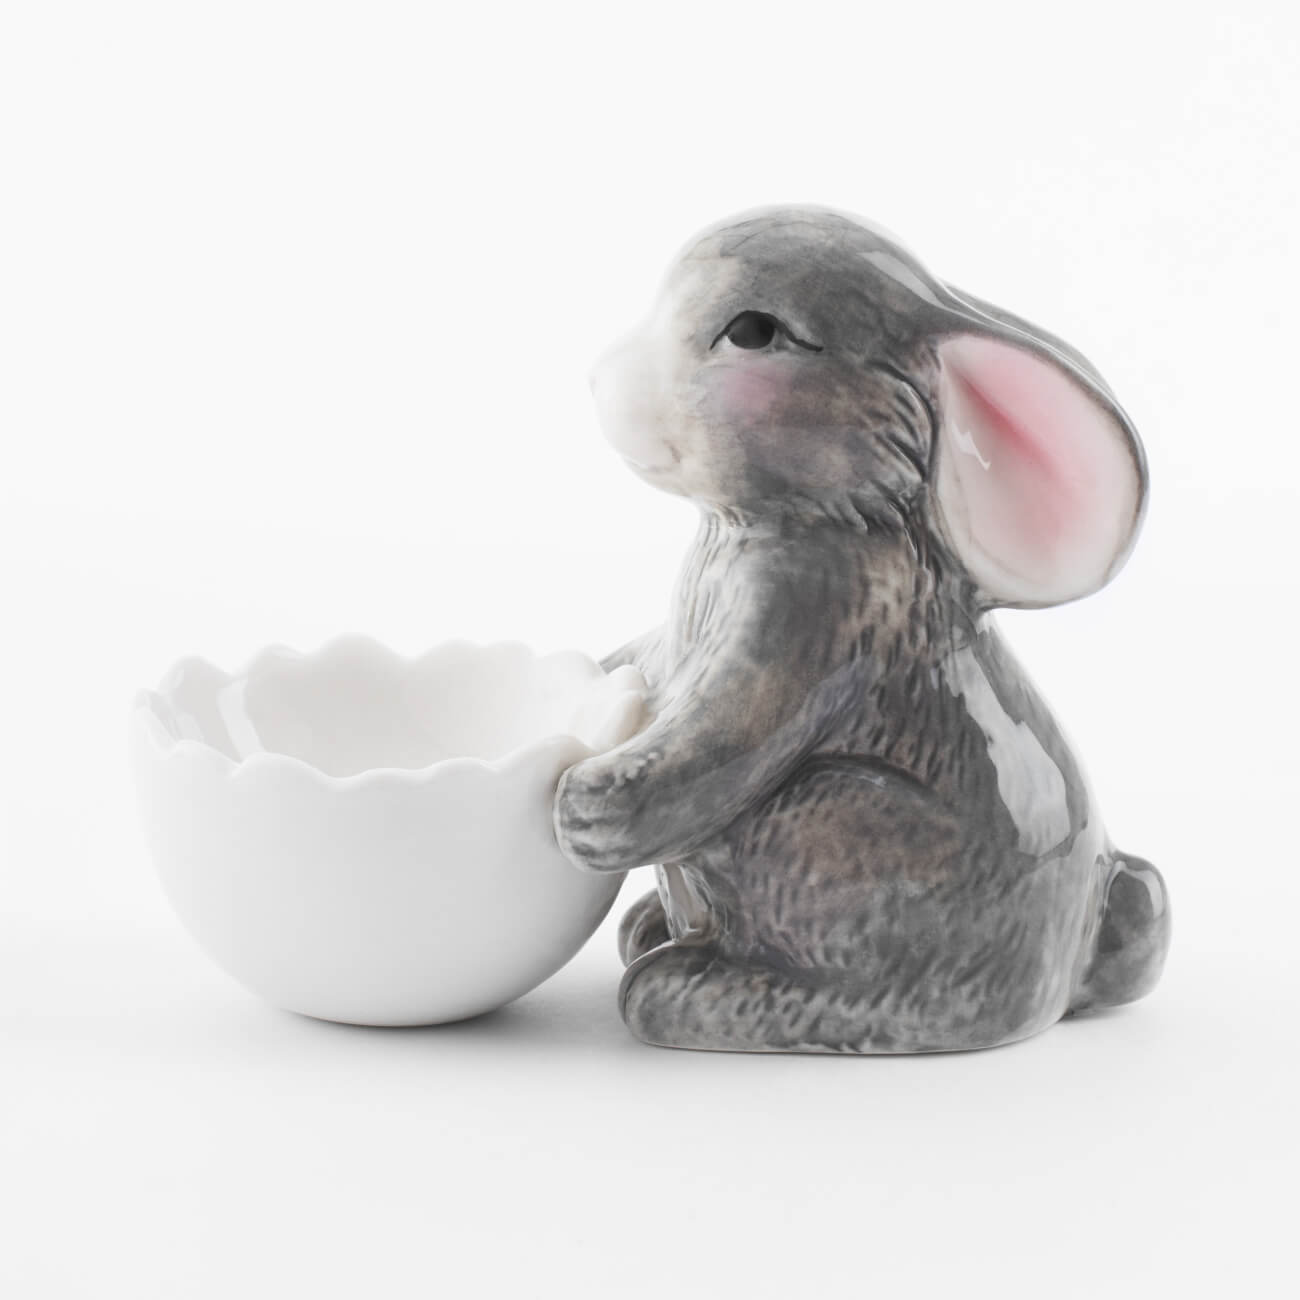 Подставка для яйца, 11 см, фарфор P, бело-серая, Кролик со скорлупой, Pure Easter изображение № 1